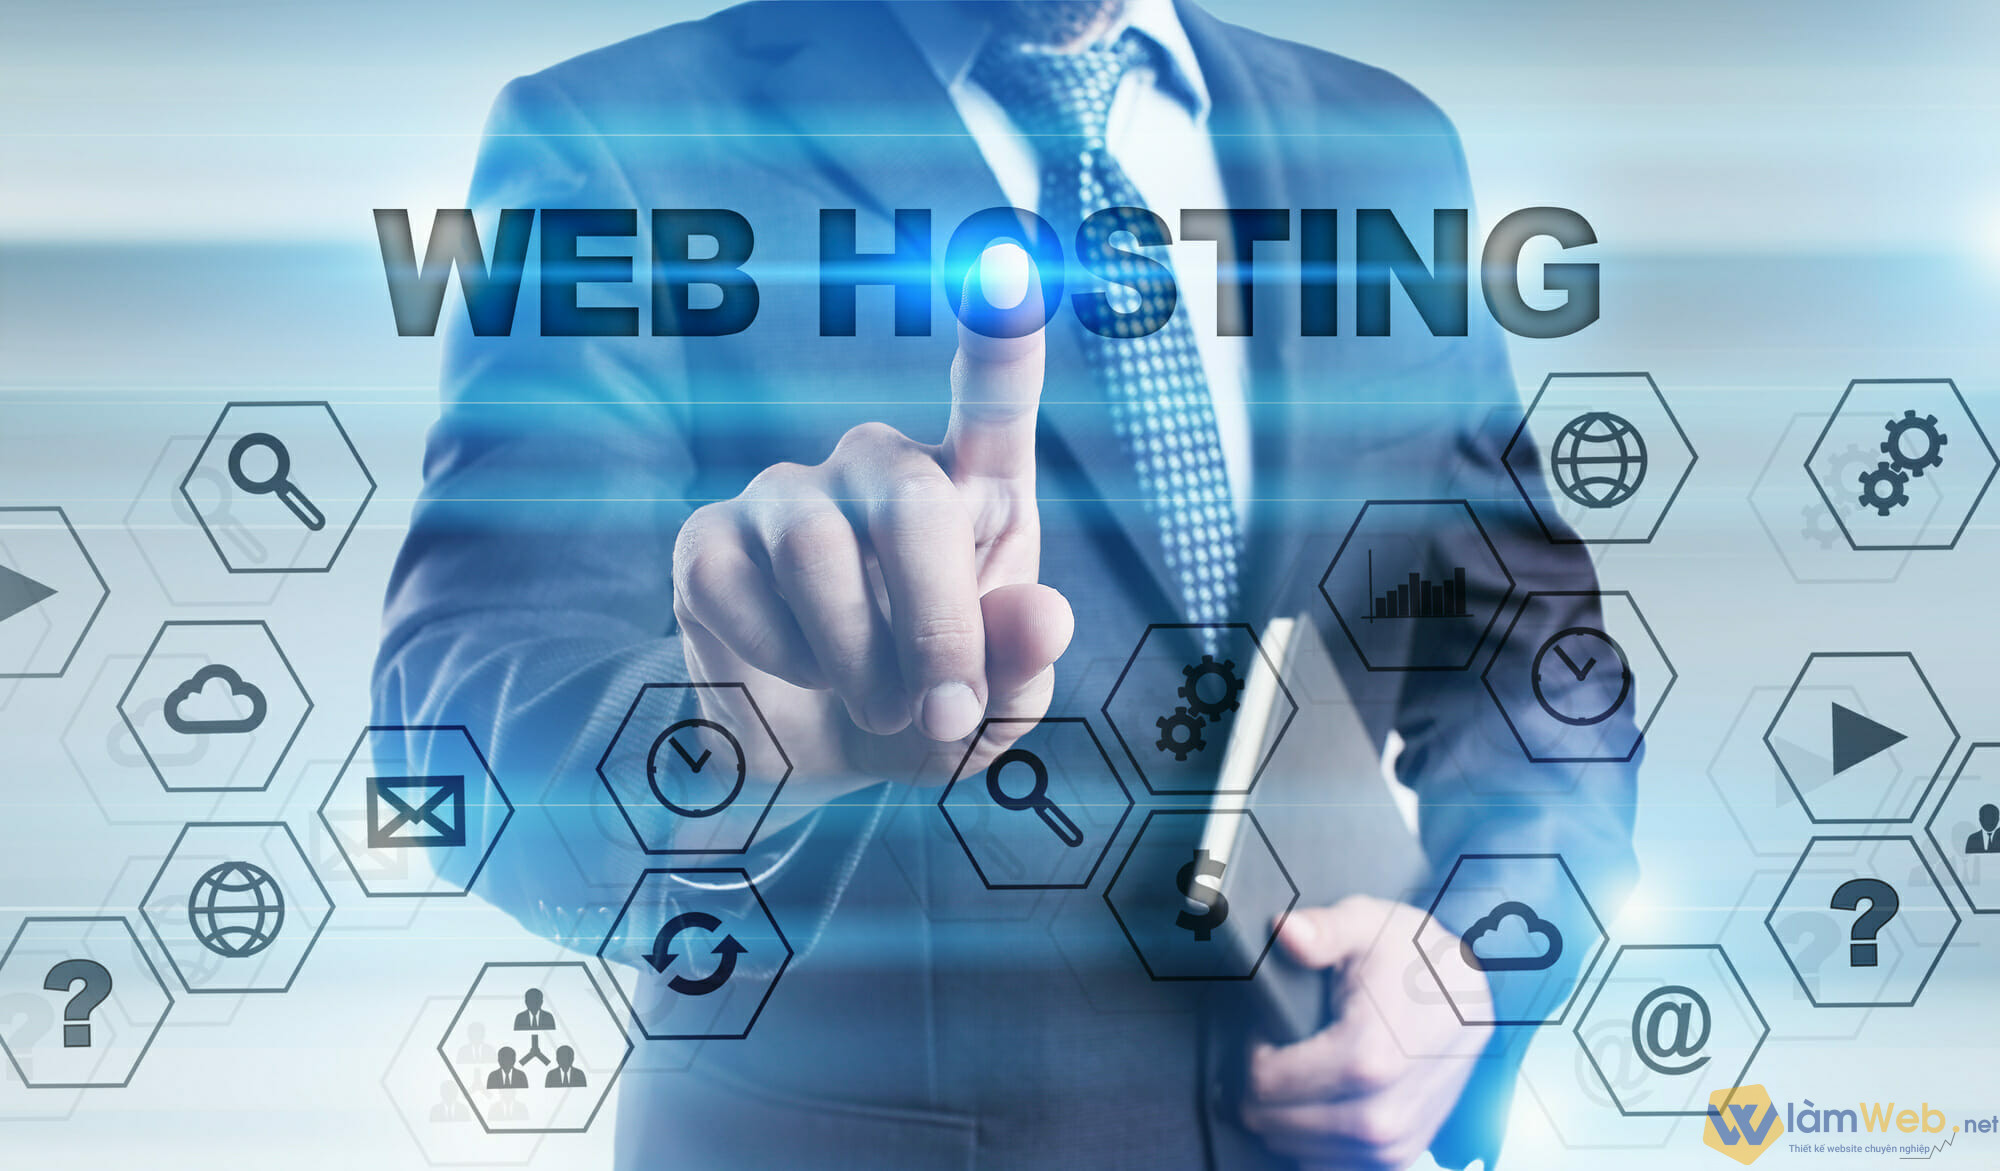 Dịch vụ web hosting bảo mật an toàn và hoạt động hiệu quả của trang website hay các blog. 